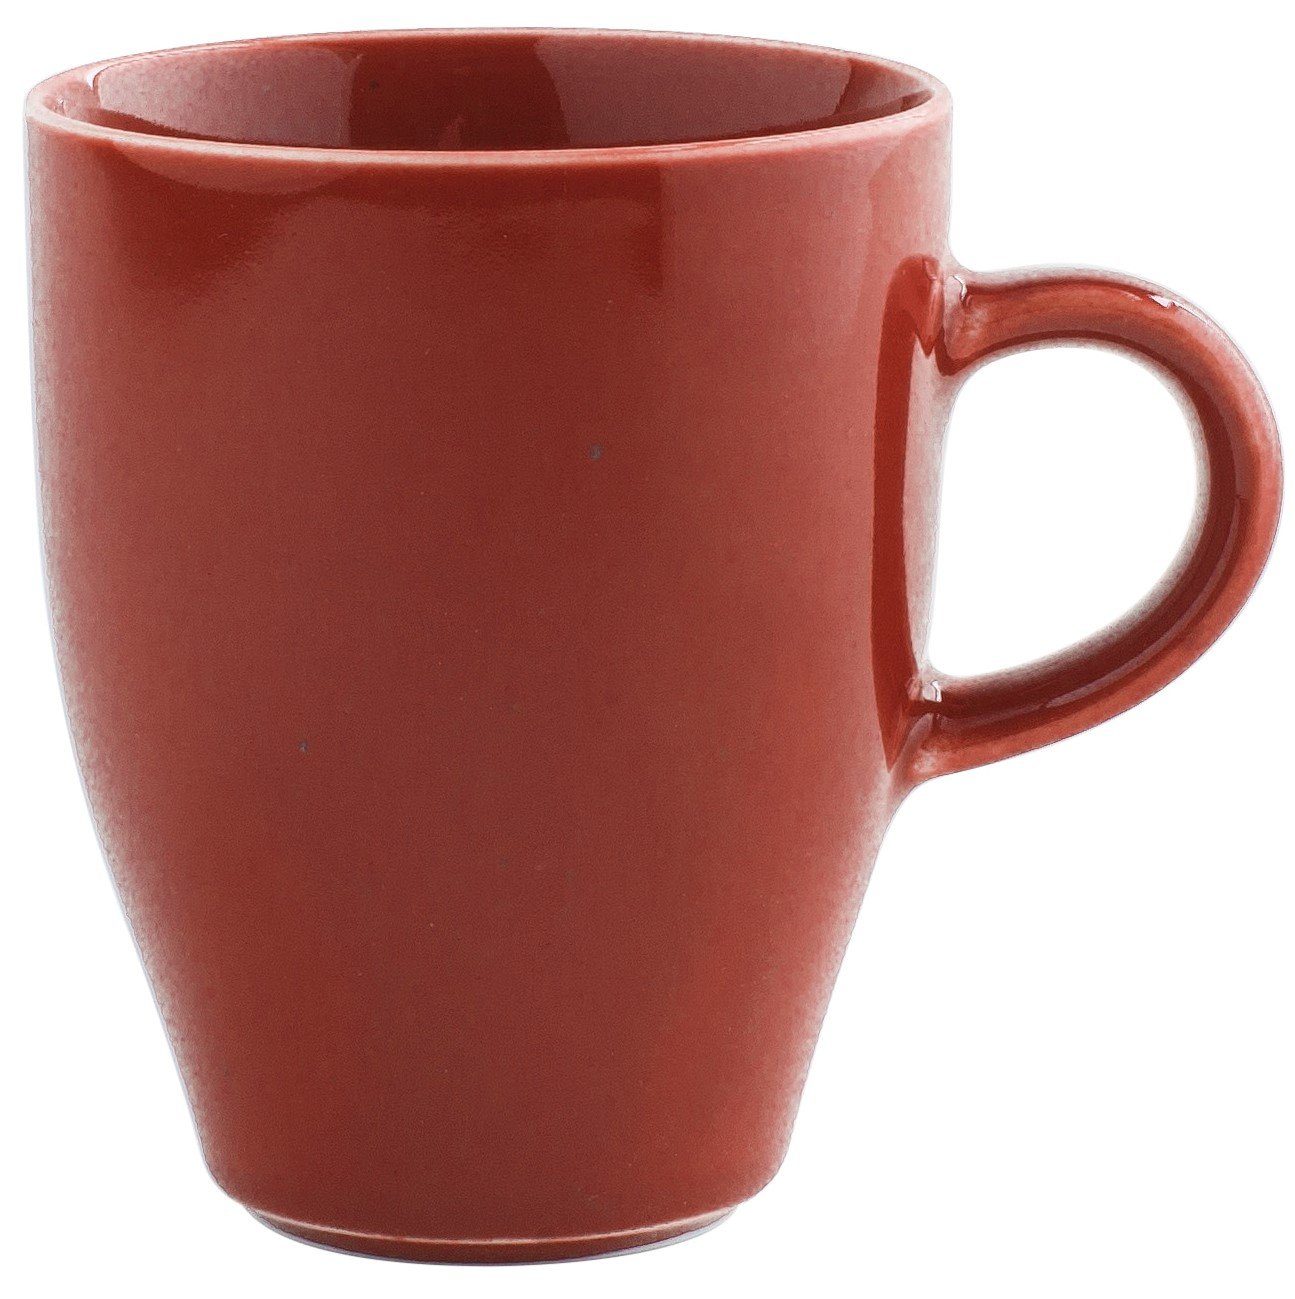 Kahla Becher Homestyle Kaffeebecher 0,32 l, Porzellan, Handglasiert, Made in Germany siena red